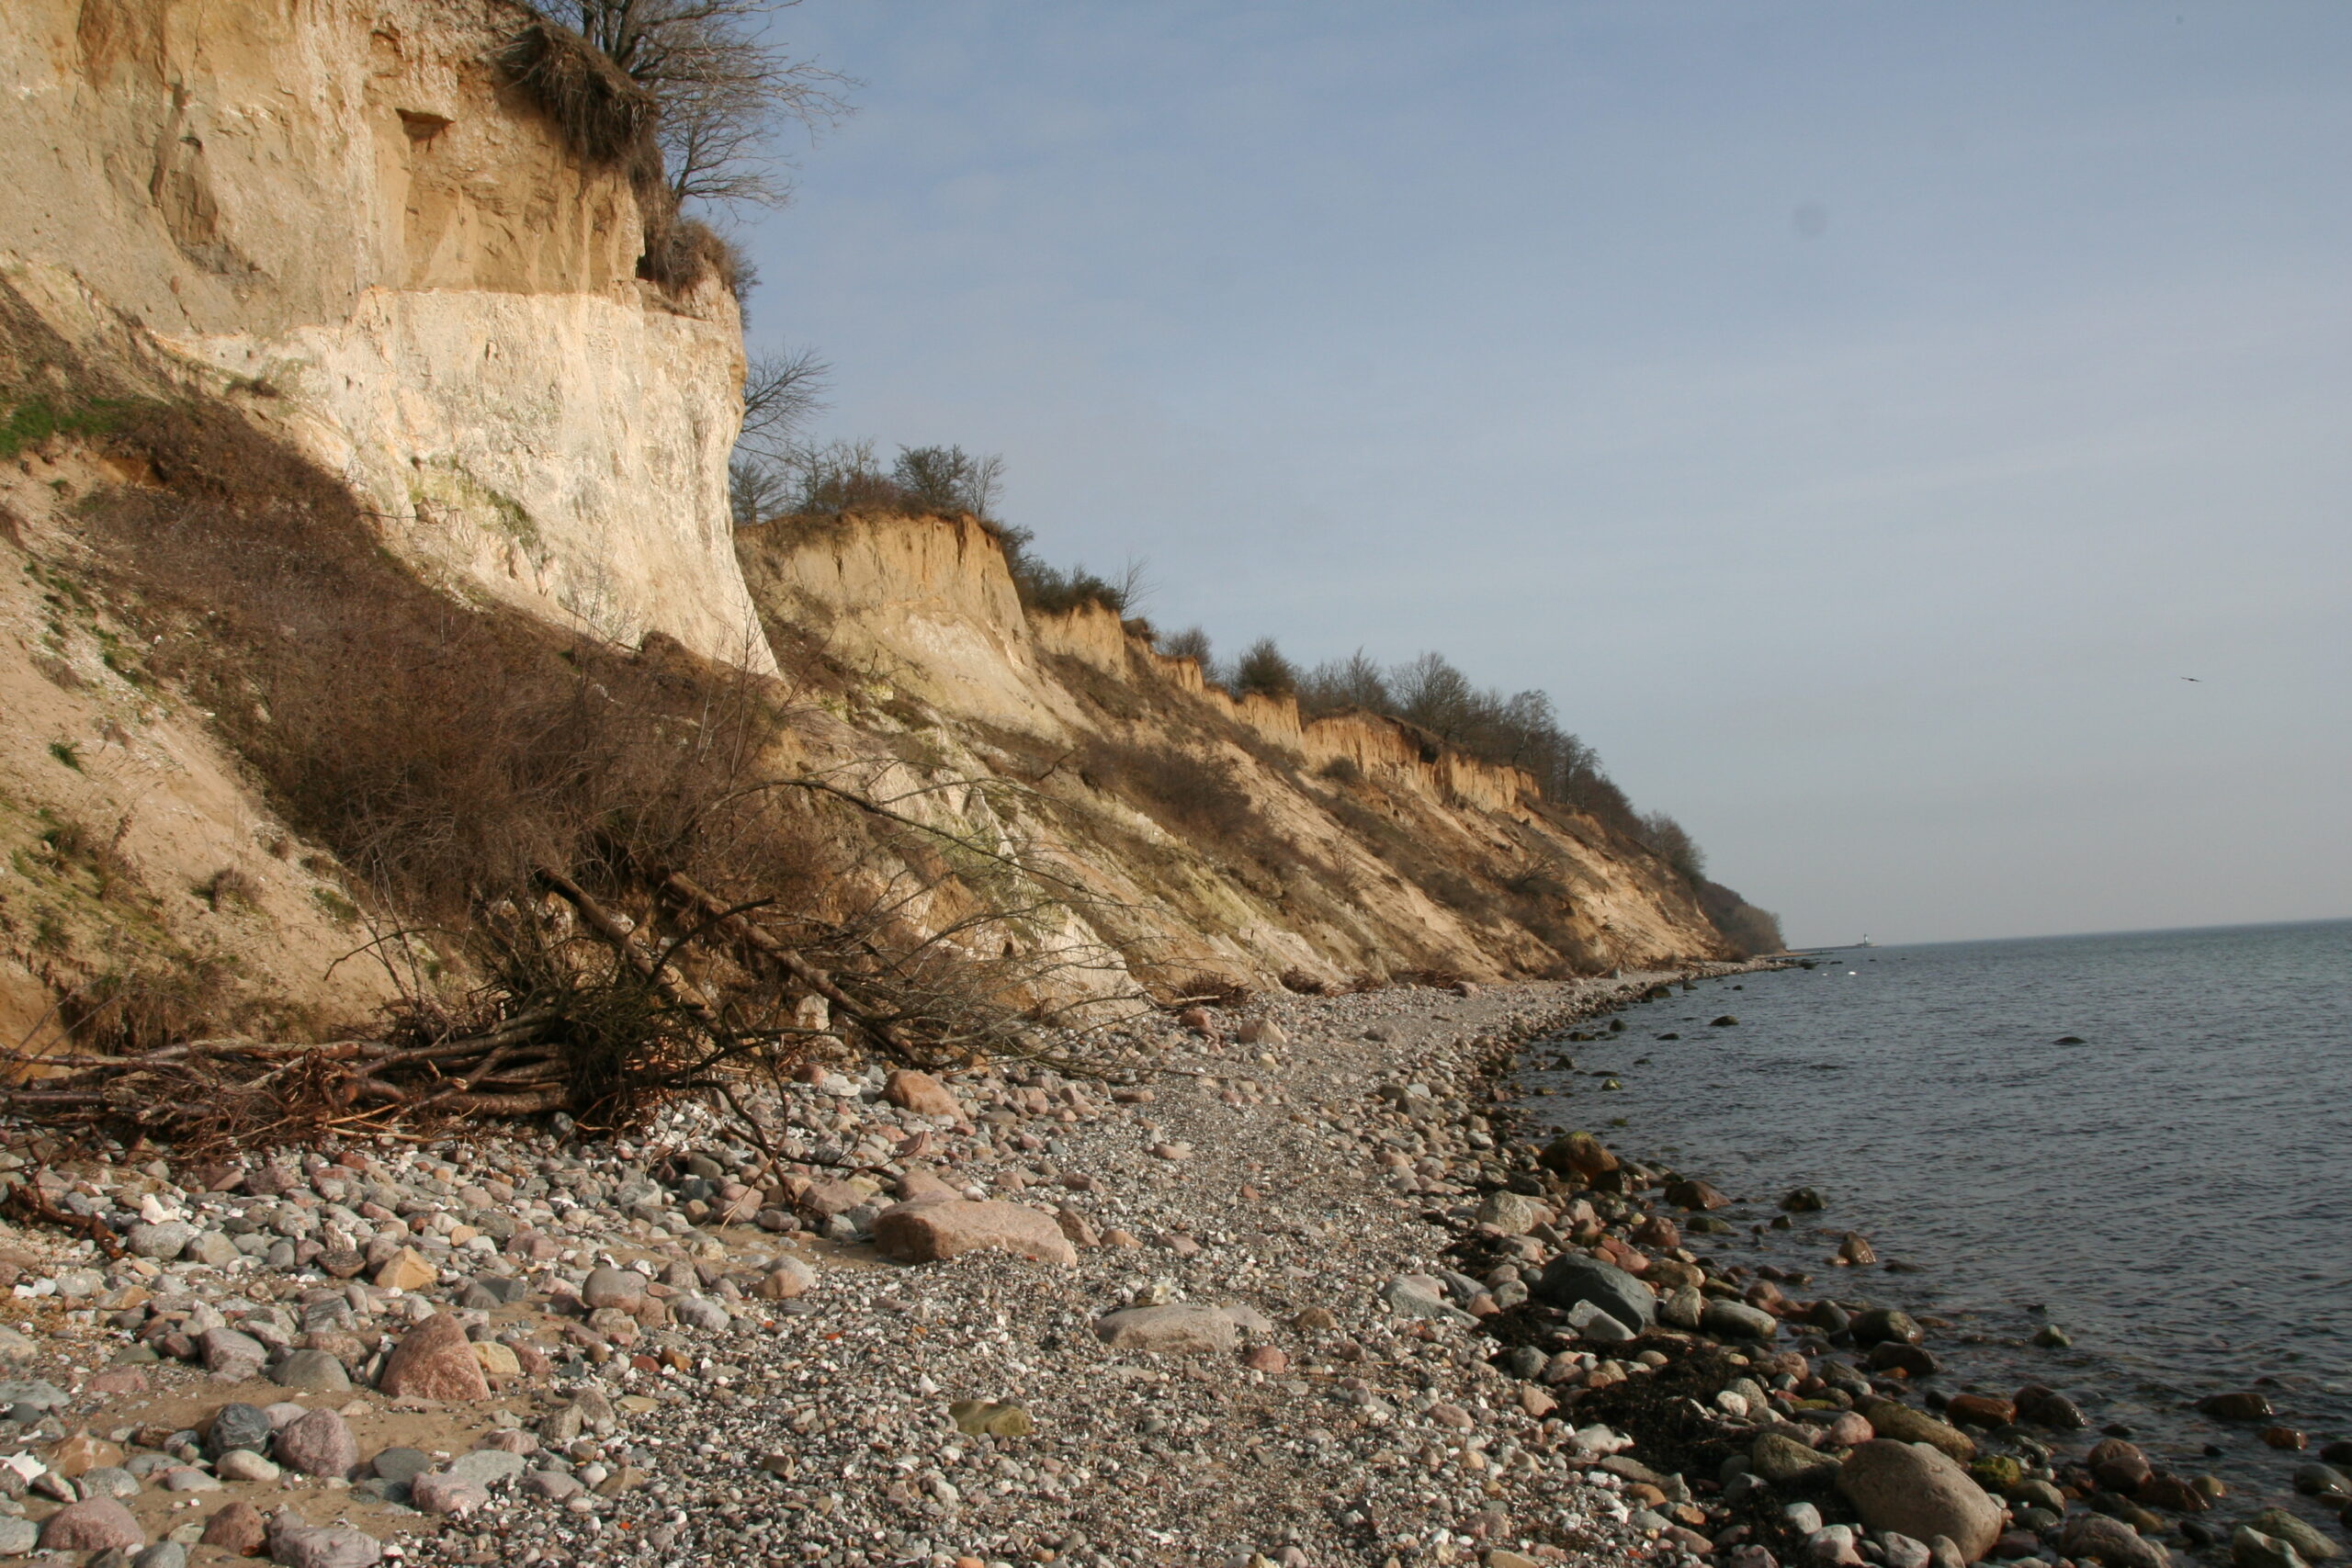 Bild Steilküste mit Gesteinsstrand in Dwasieden auf der Insel Rügen